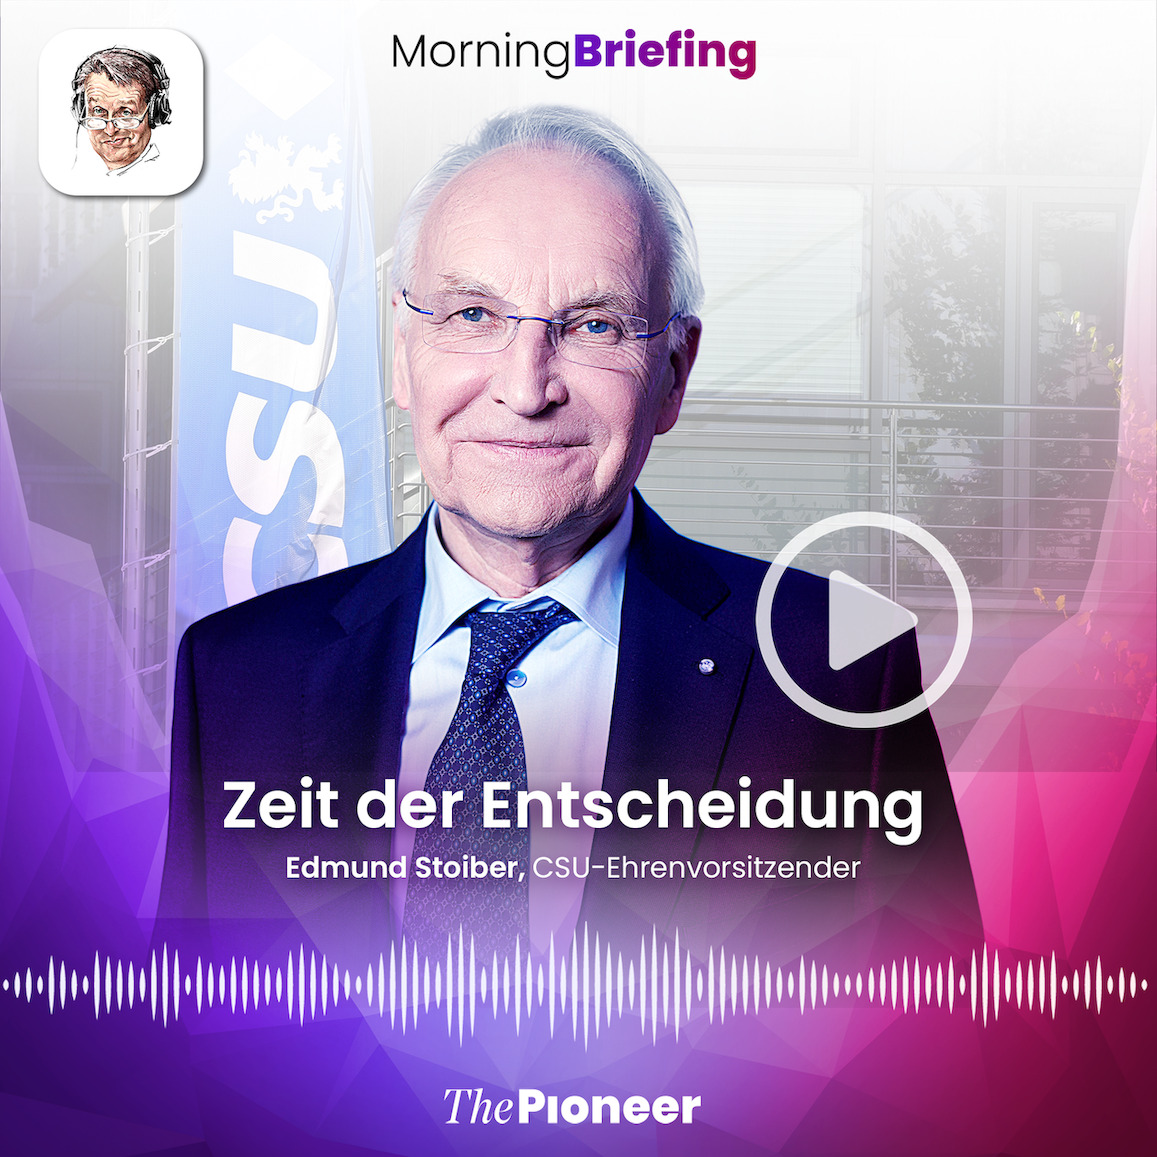 20201116-image-media pioneer-morning briefing-Kachel Stoiber